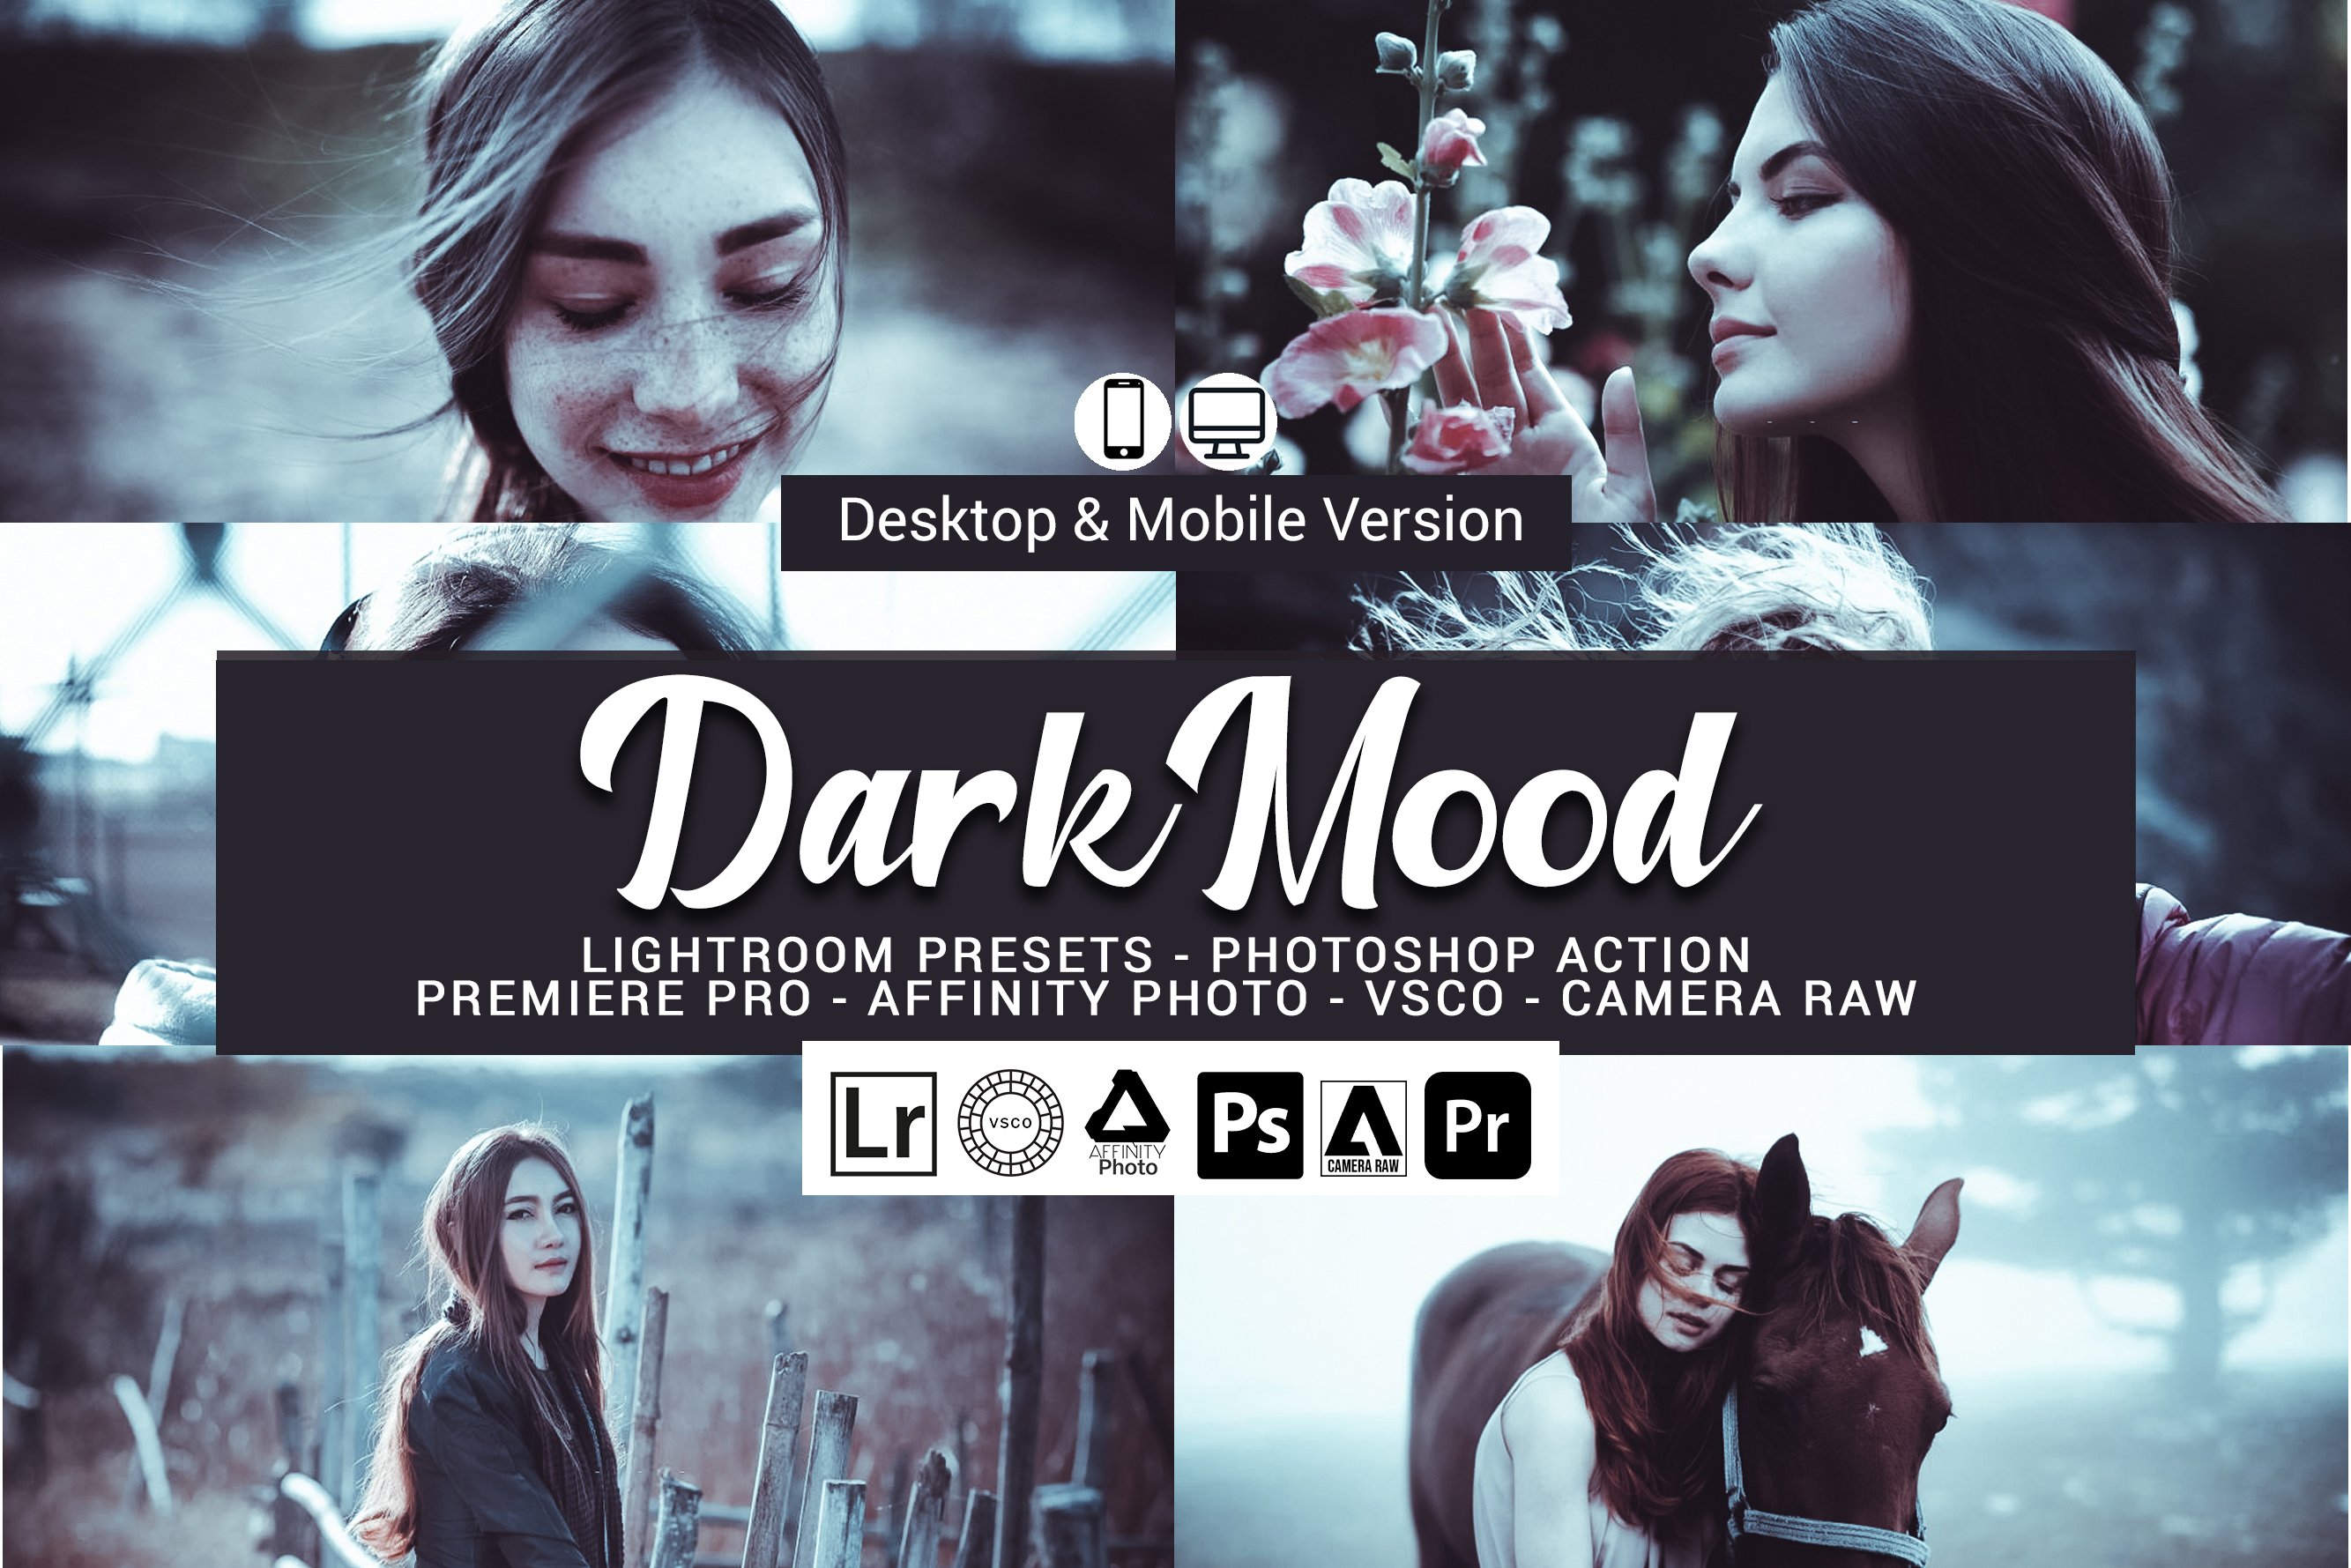 Dark Mood Lightroom Presetscover image.